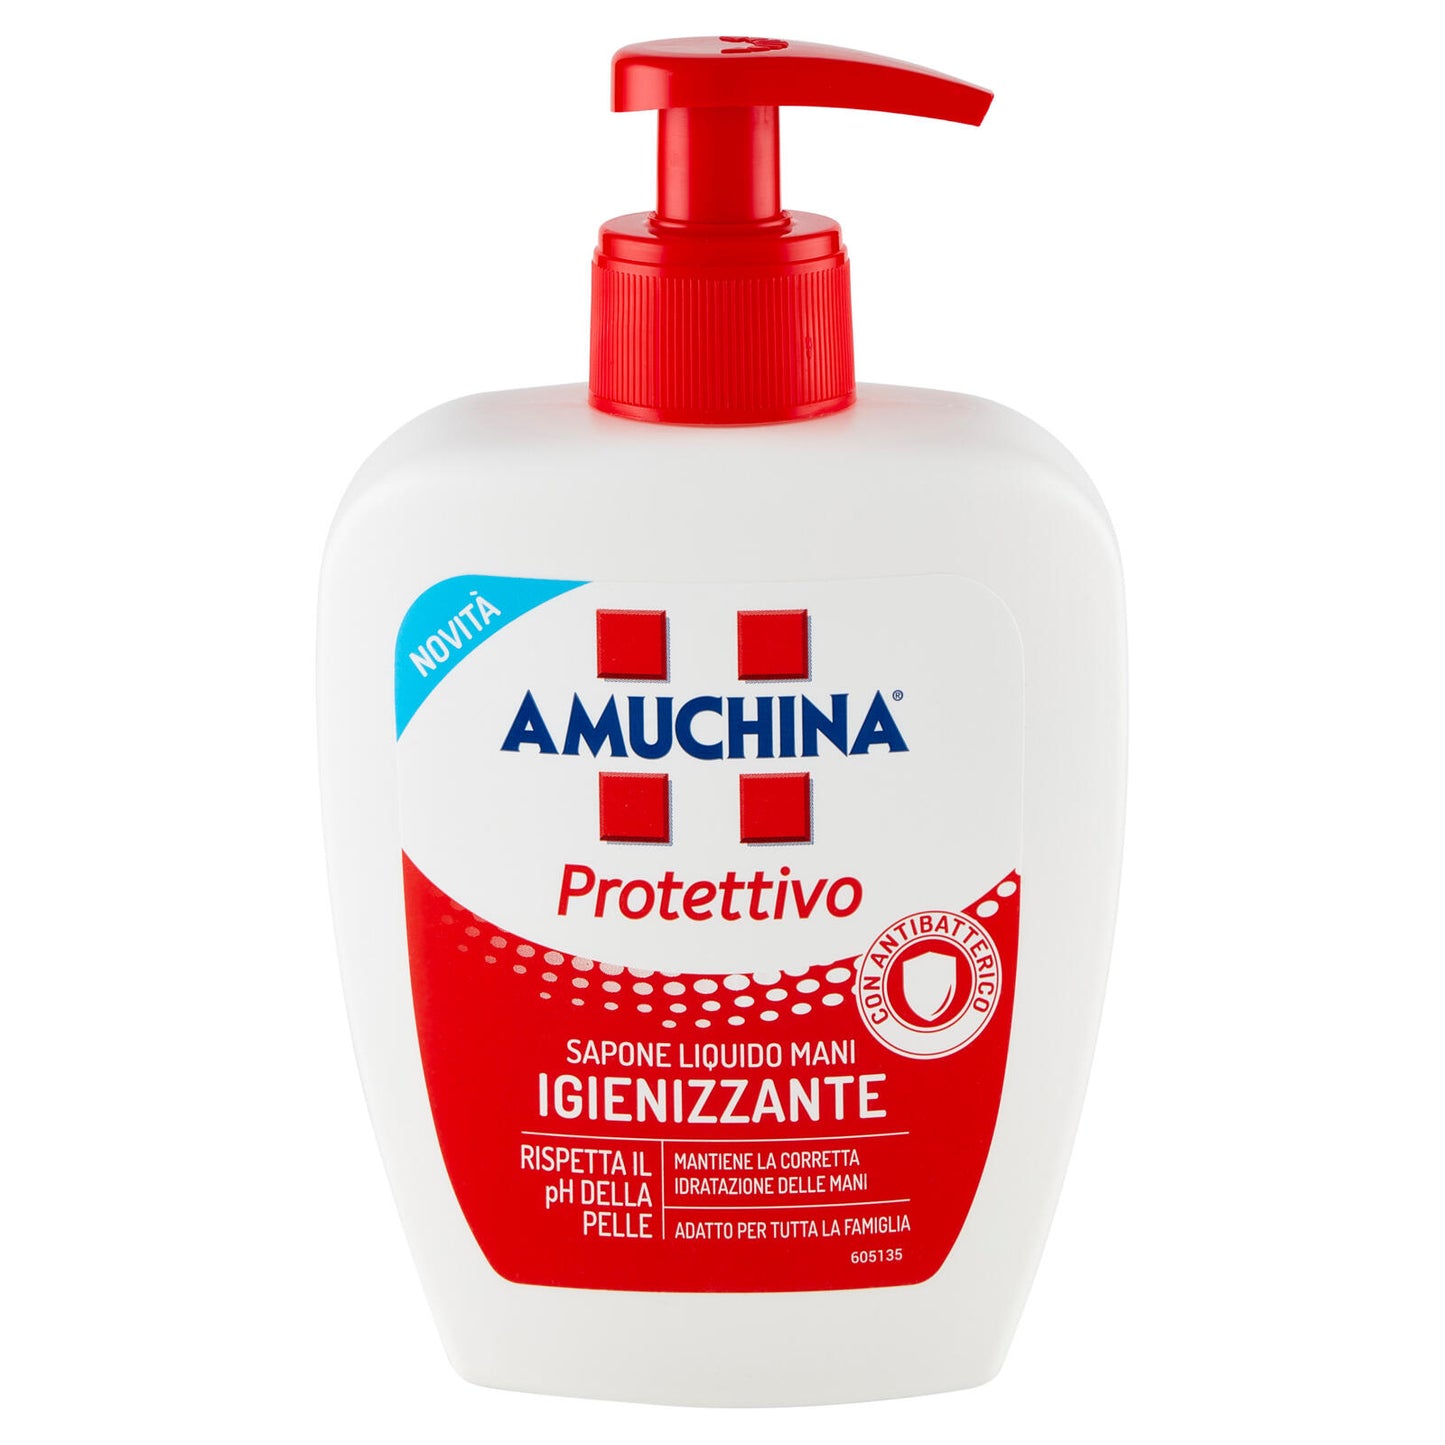 Amuchina Protettivo Sapone Liquido Mani Igienizzante 250 ml